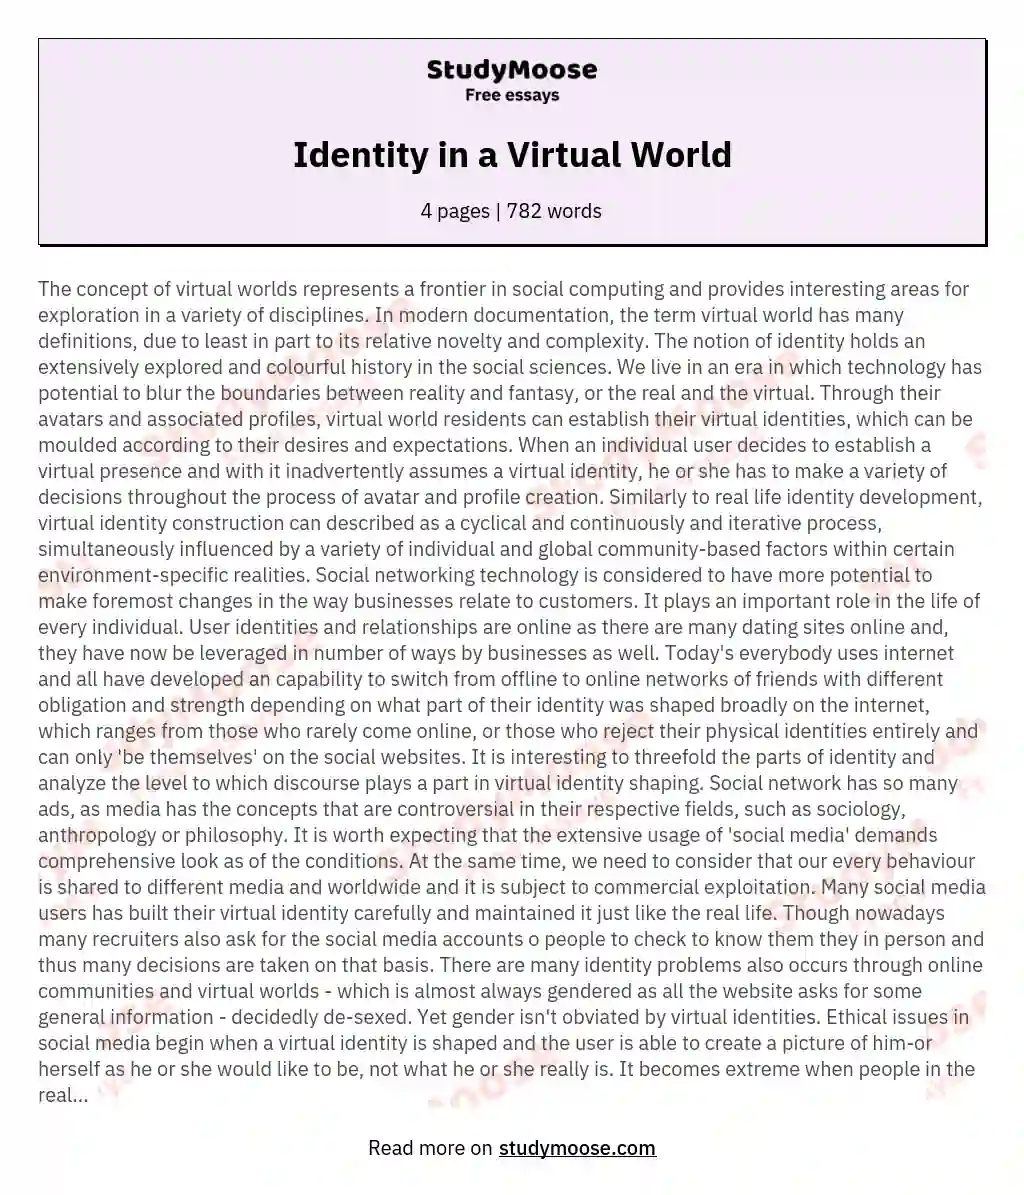 Identity in a Virtual World essay